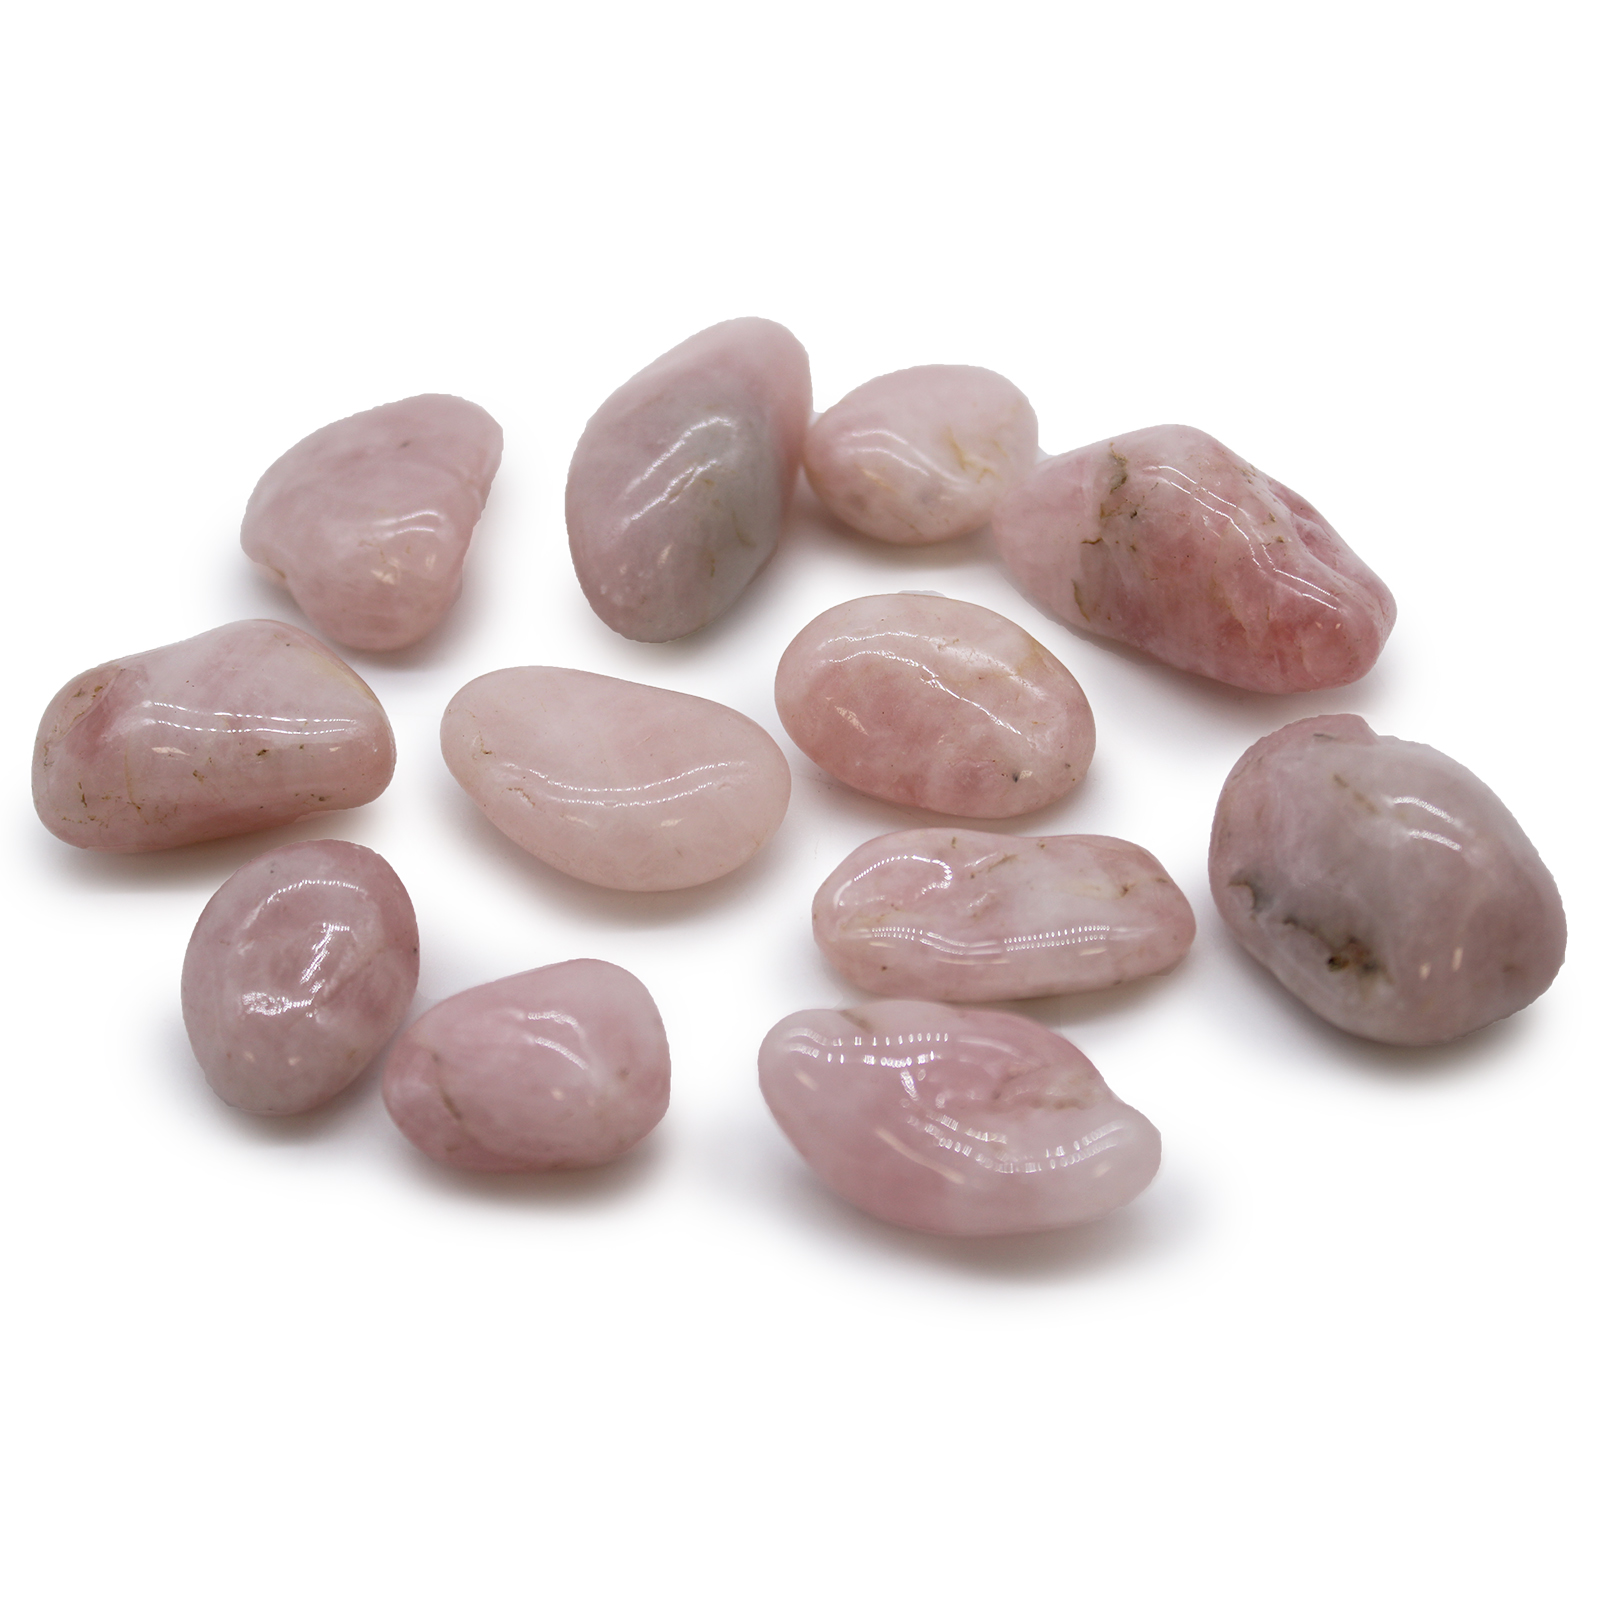 12 x Medium African Tumble Stones - Rose Quartz - Click Image to Close